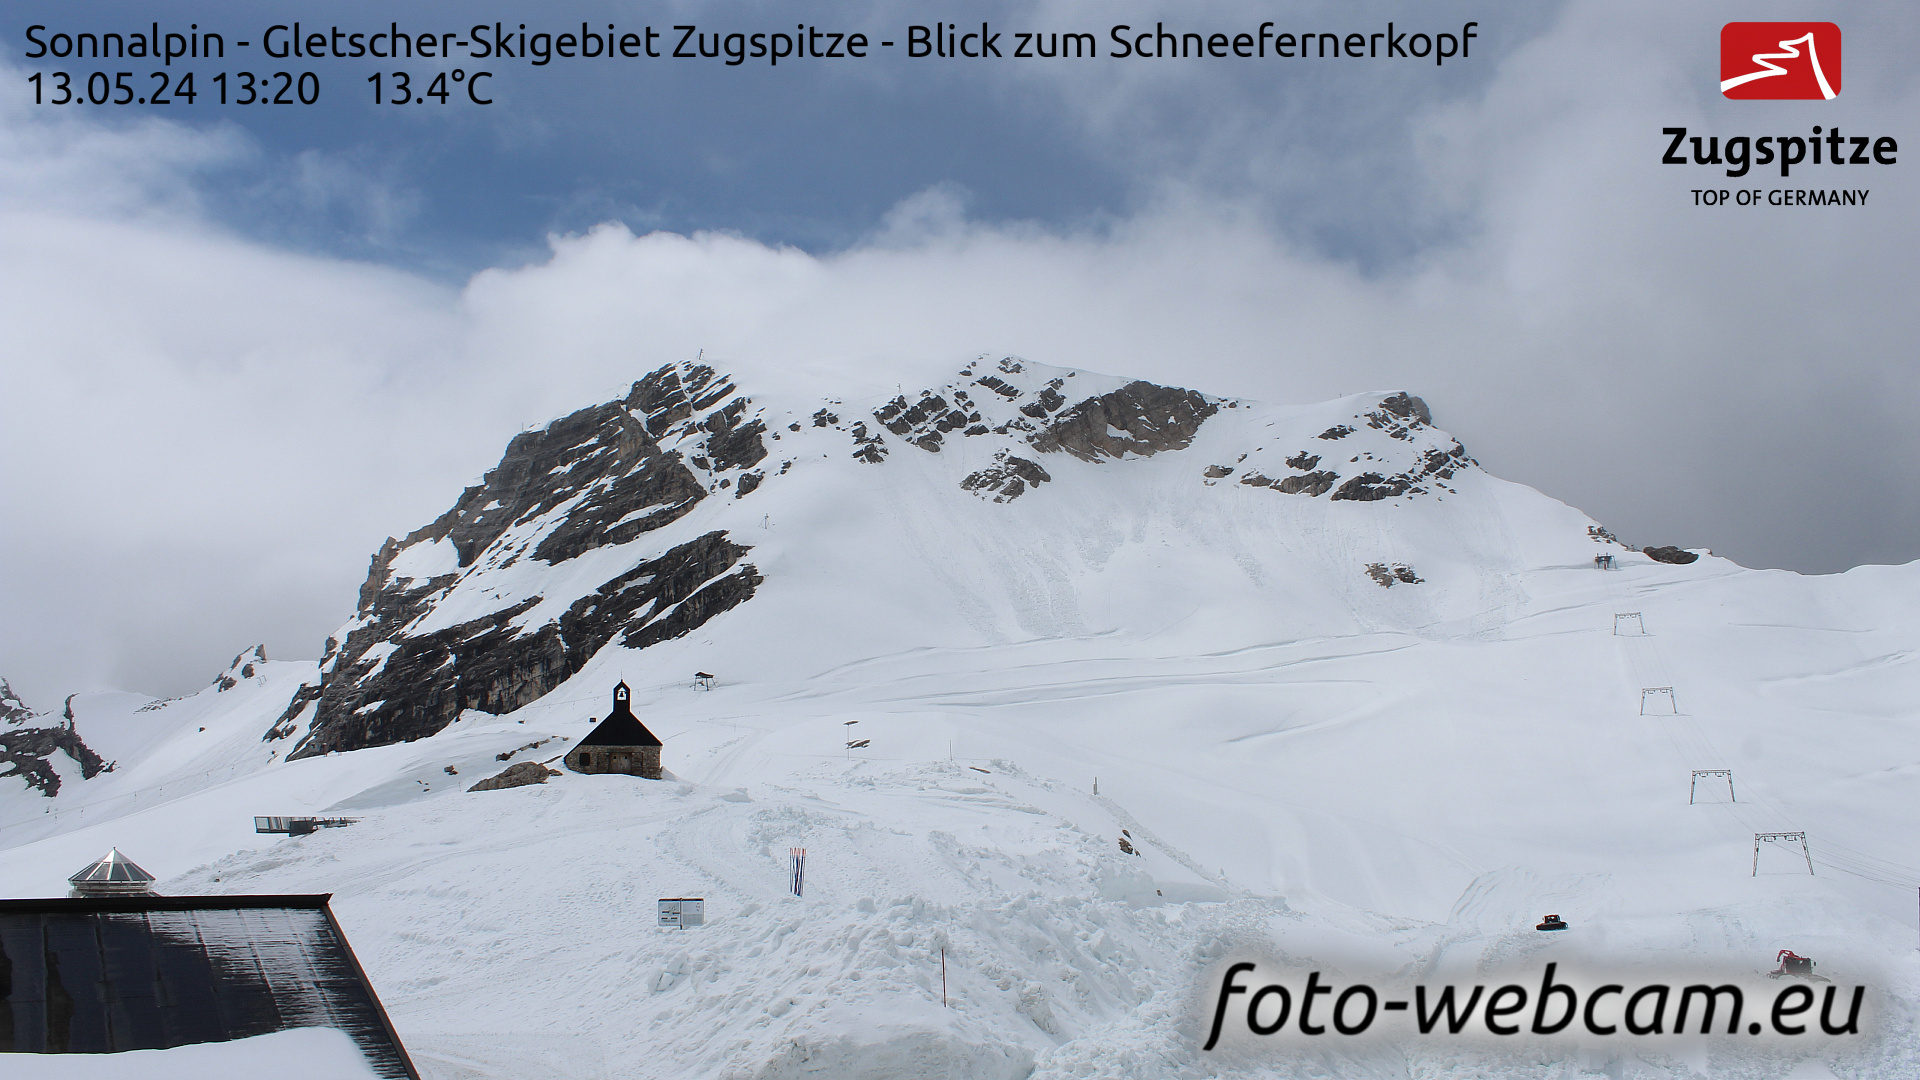 Zugspitze So. 13:24